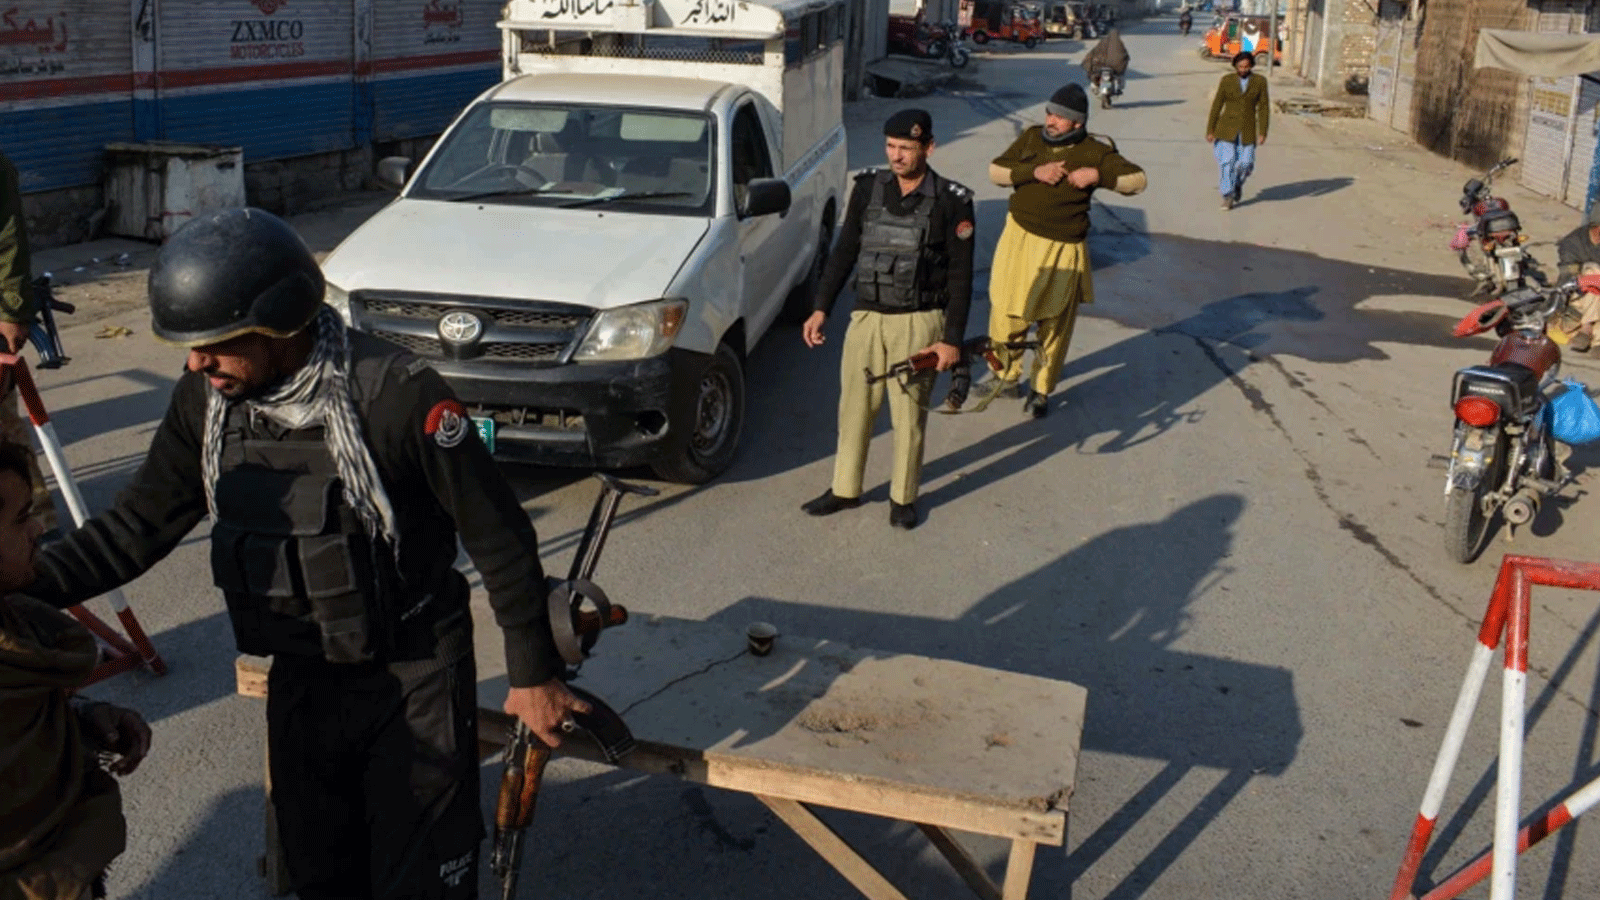  الشرطة الباكستانية تقف حراسة عند حاجز على الطريق بعد أن استولى مسلحو طالبان على مركز للشرطة في بانو، مقاطعة خيبر بختونخوا. 19 كانون الأول\ديسمبر 2022